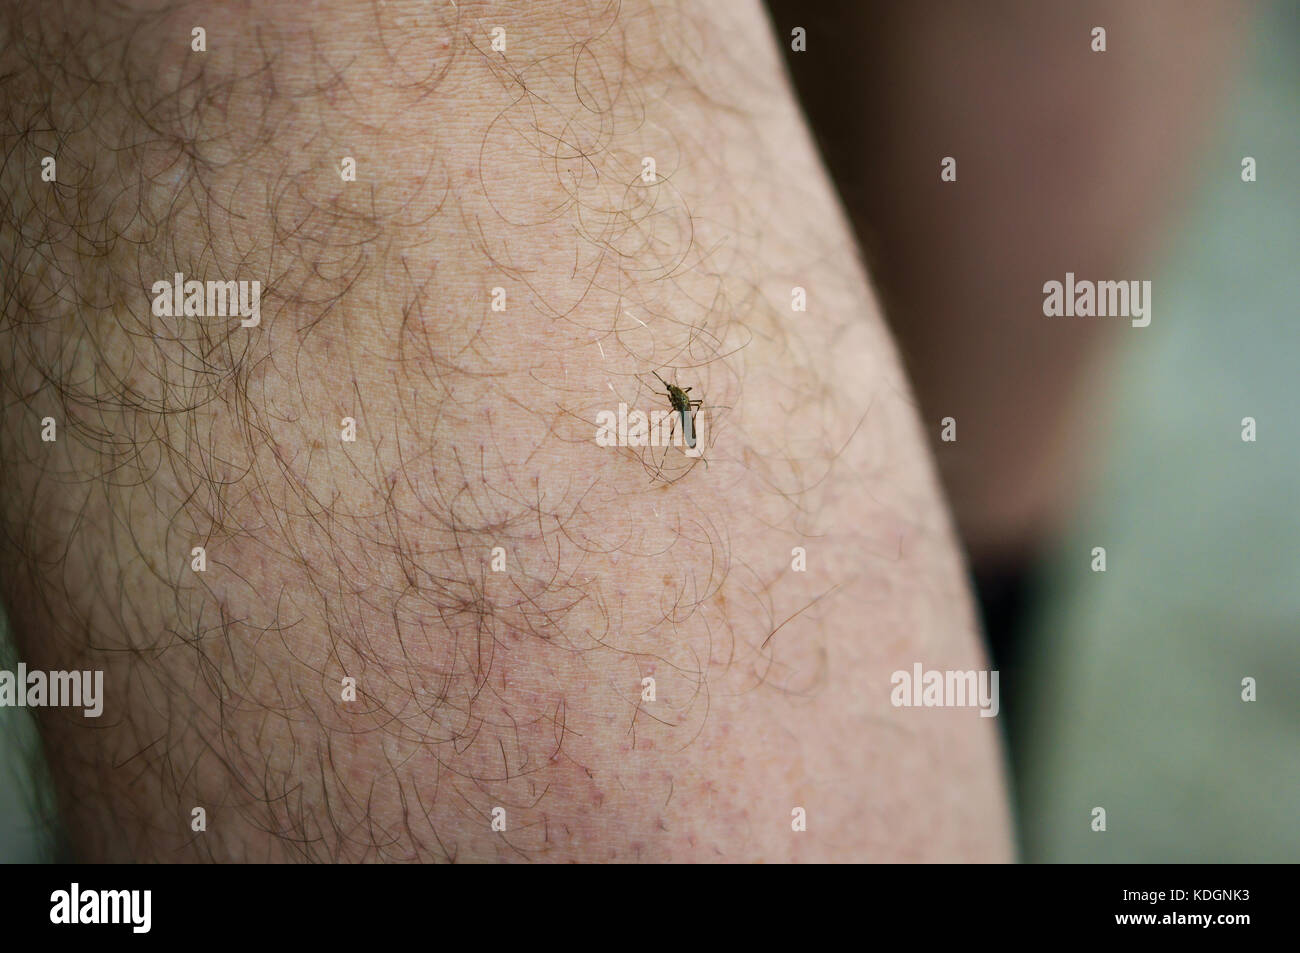 Una seduta di zanzara sulla mano umana, punture di insetti Foto Stock